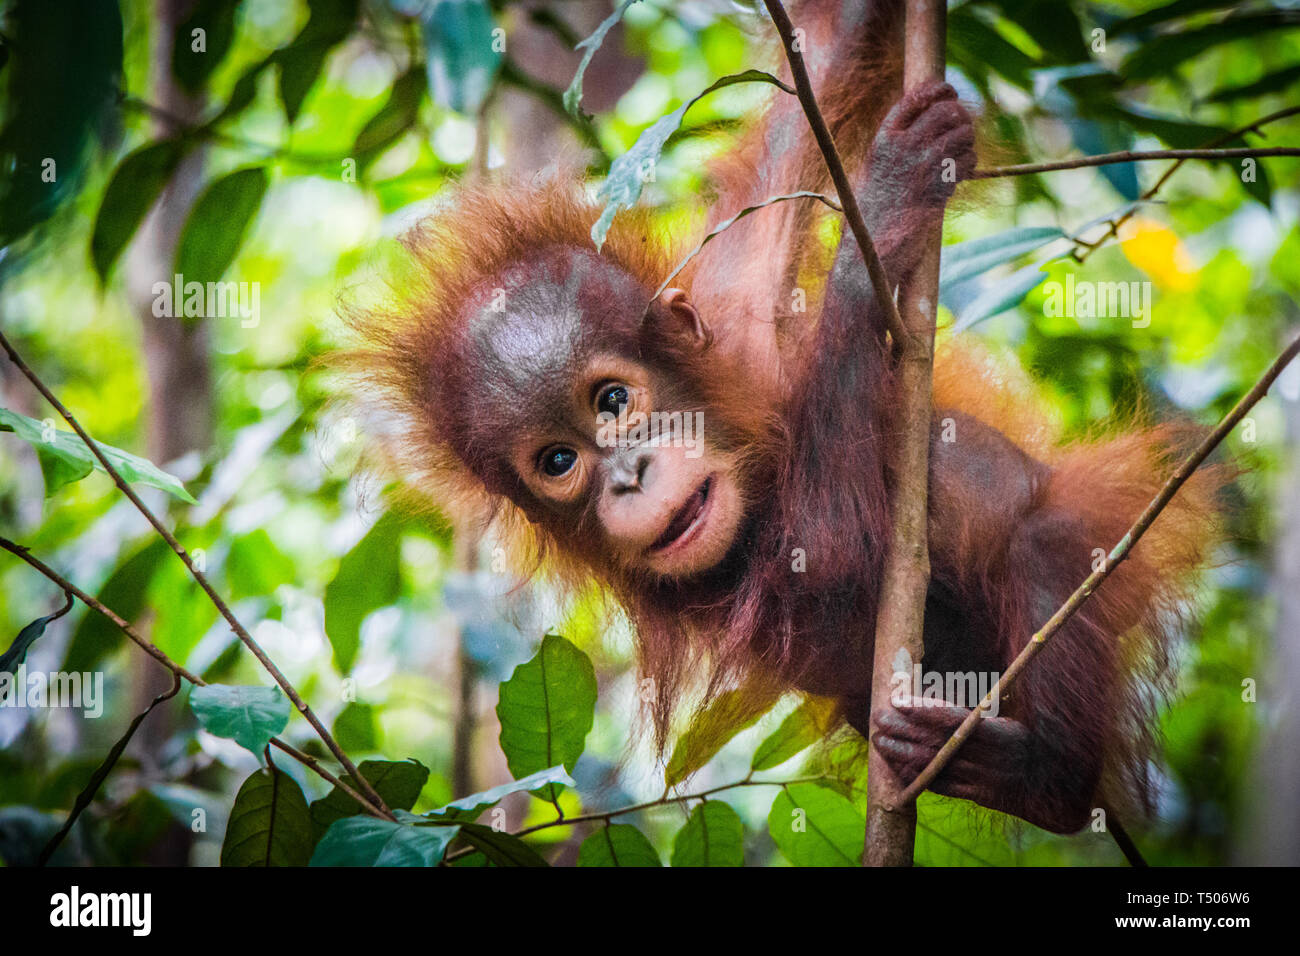 Bebe Le Plus Mignon Du Monde Pend De L Orang Outan Dans Un Arbre Dans Les Jungles De Borneo Photo Stock Alamy